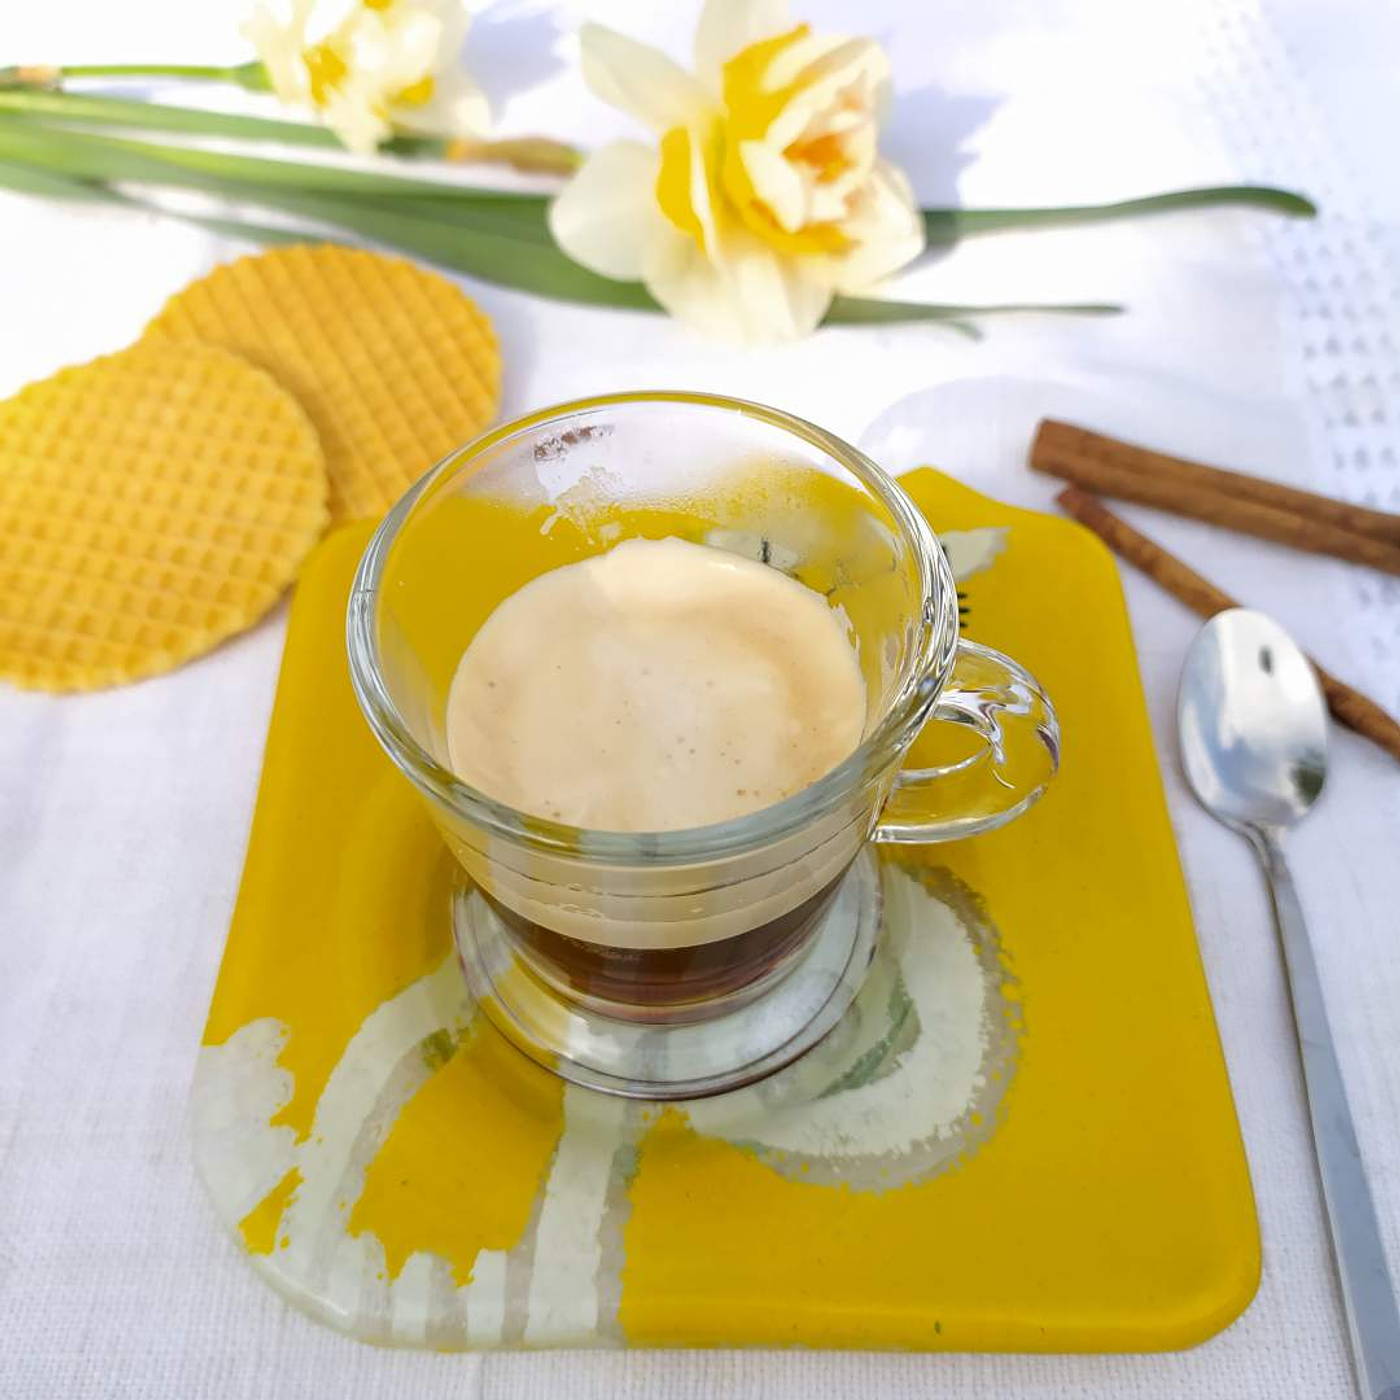 Chávena Café Gato Amarelo